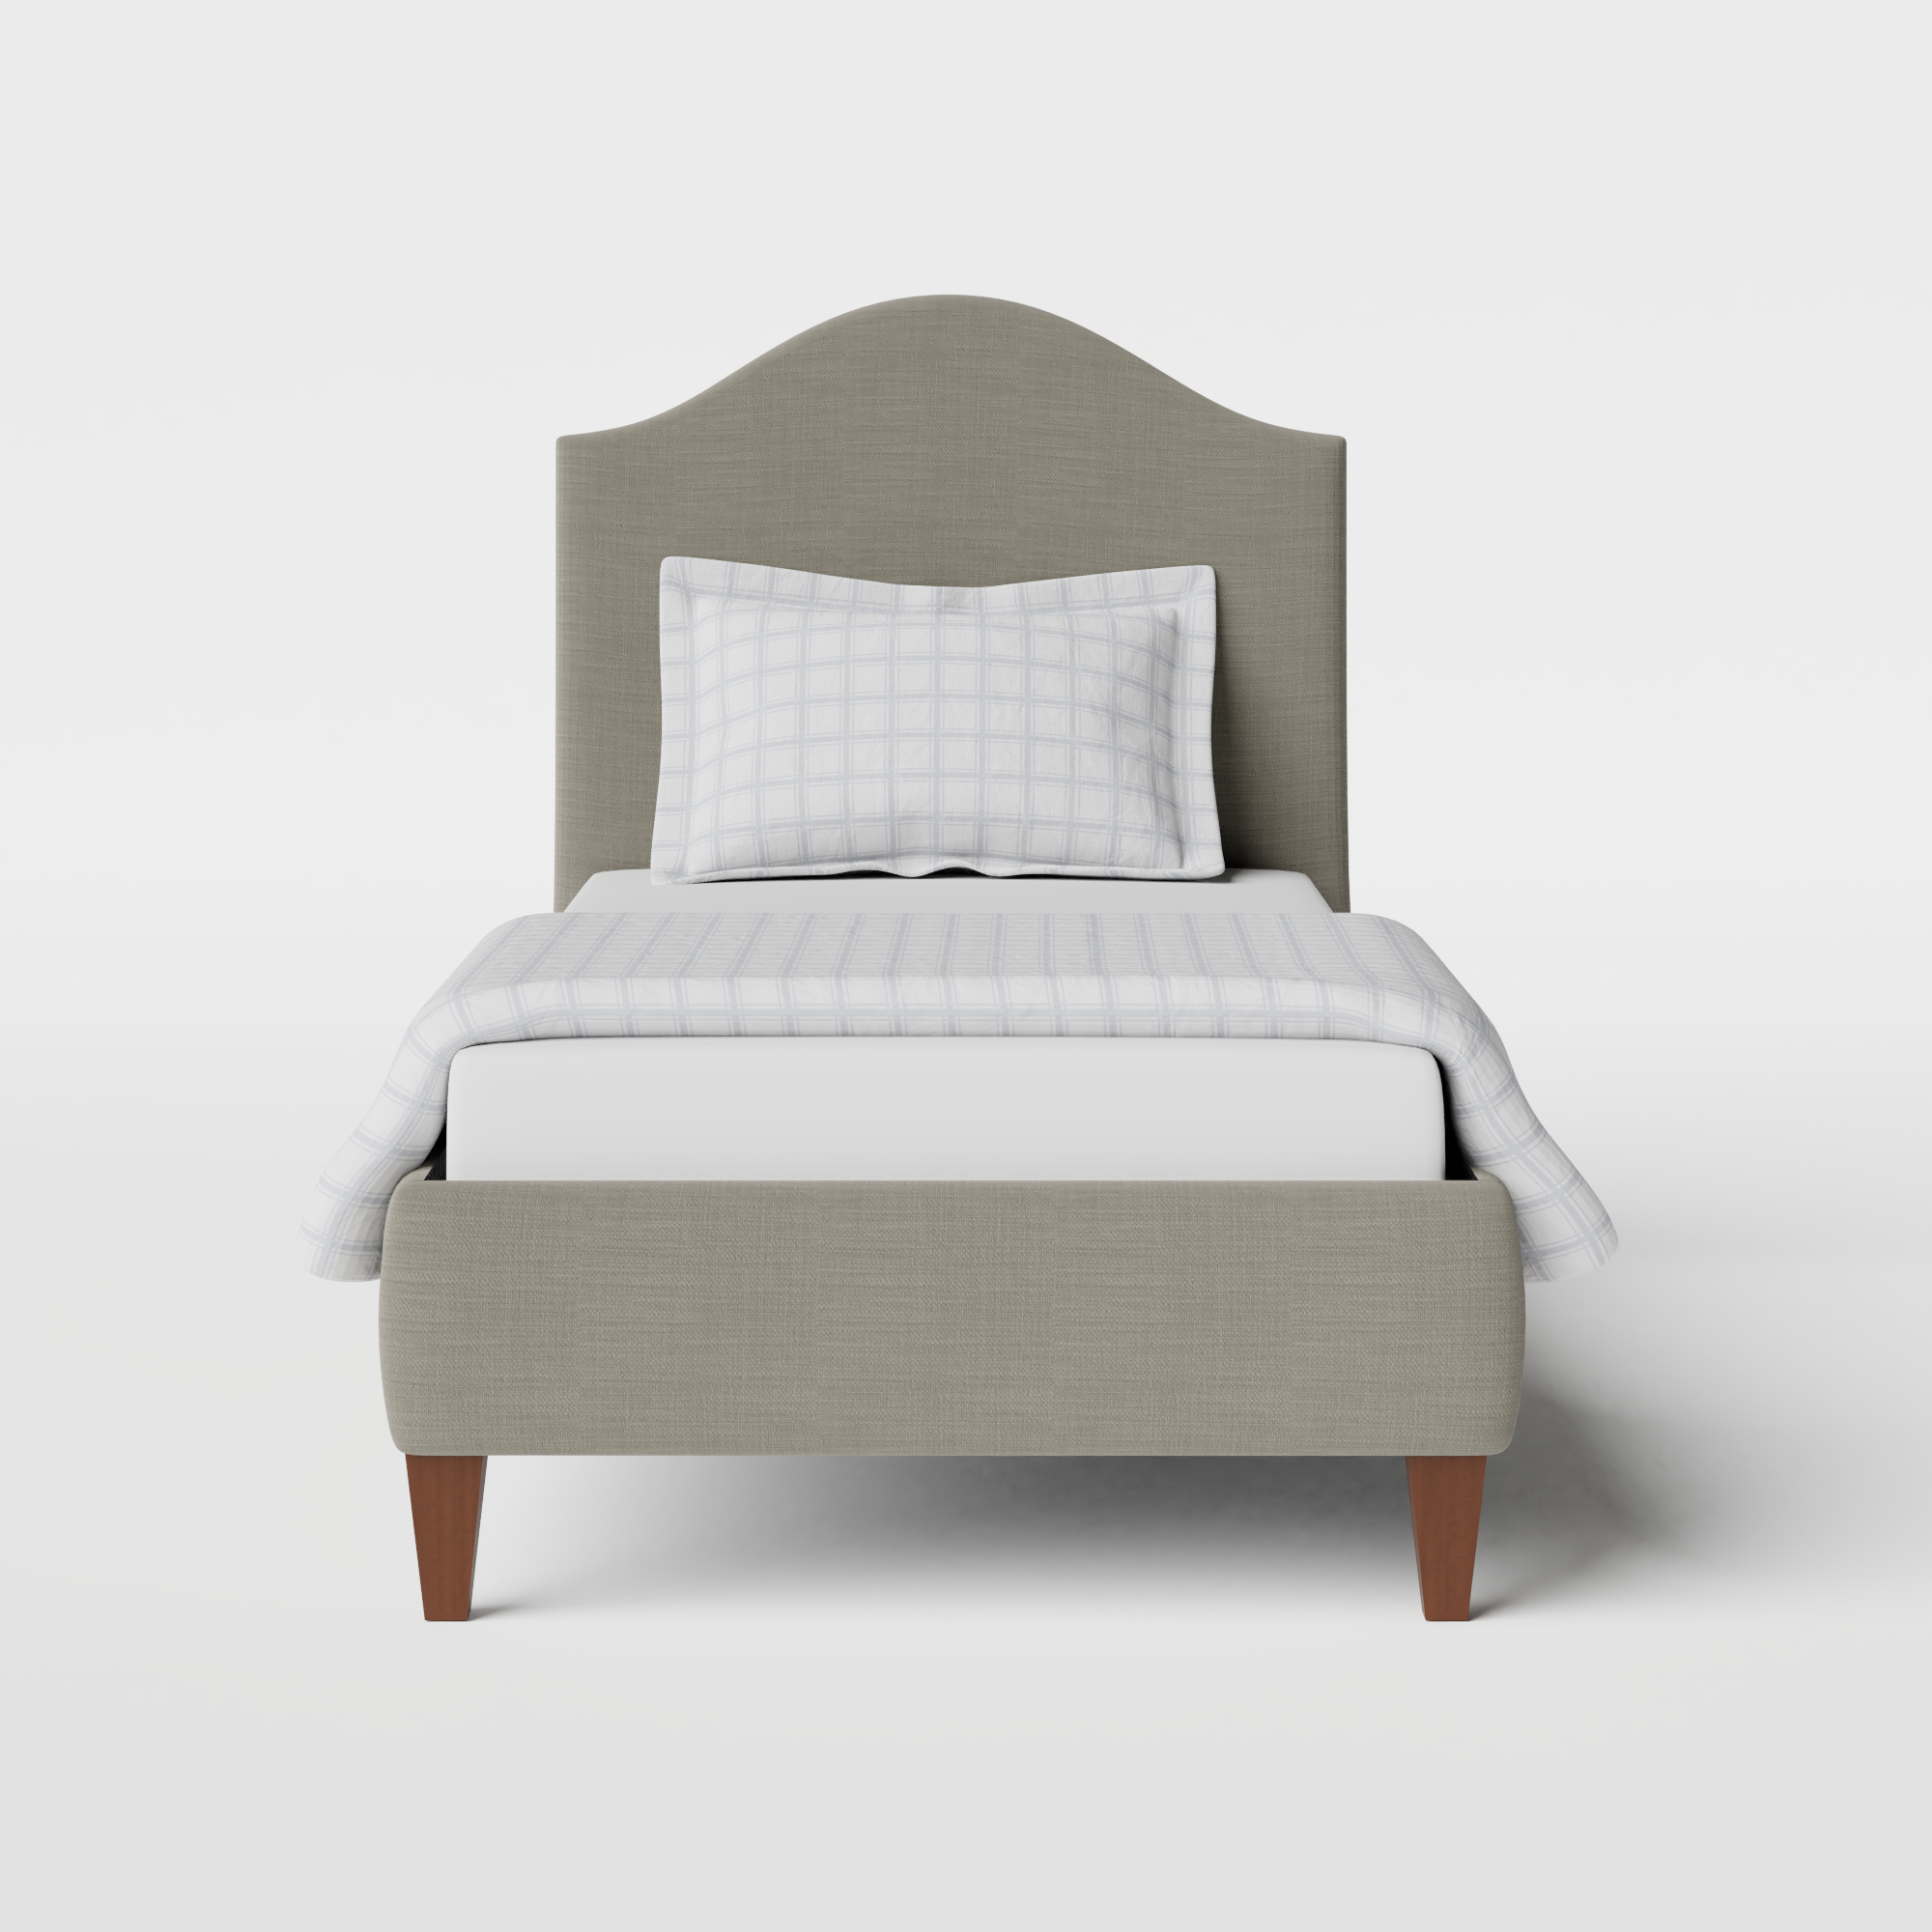 Daniella cama individual tapizada en tela gris